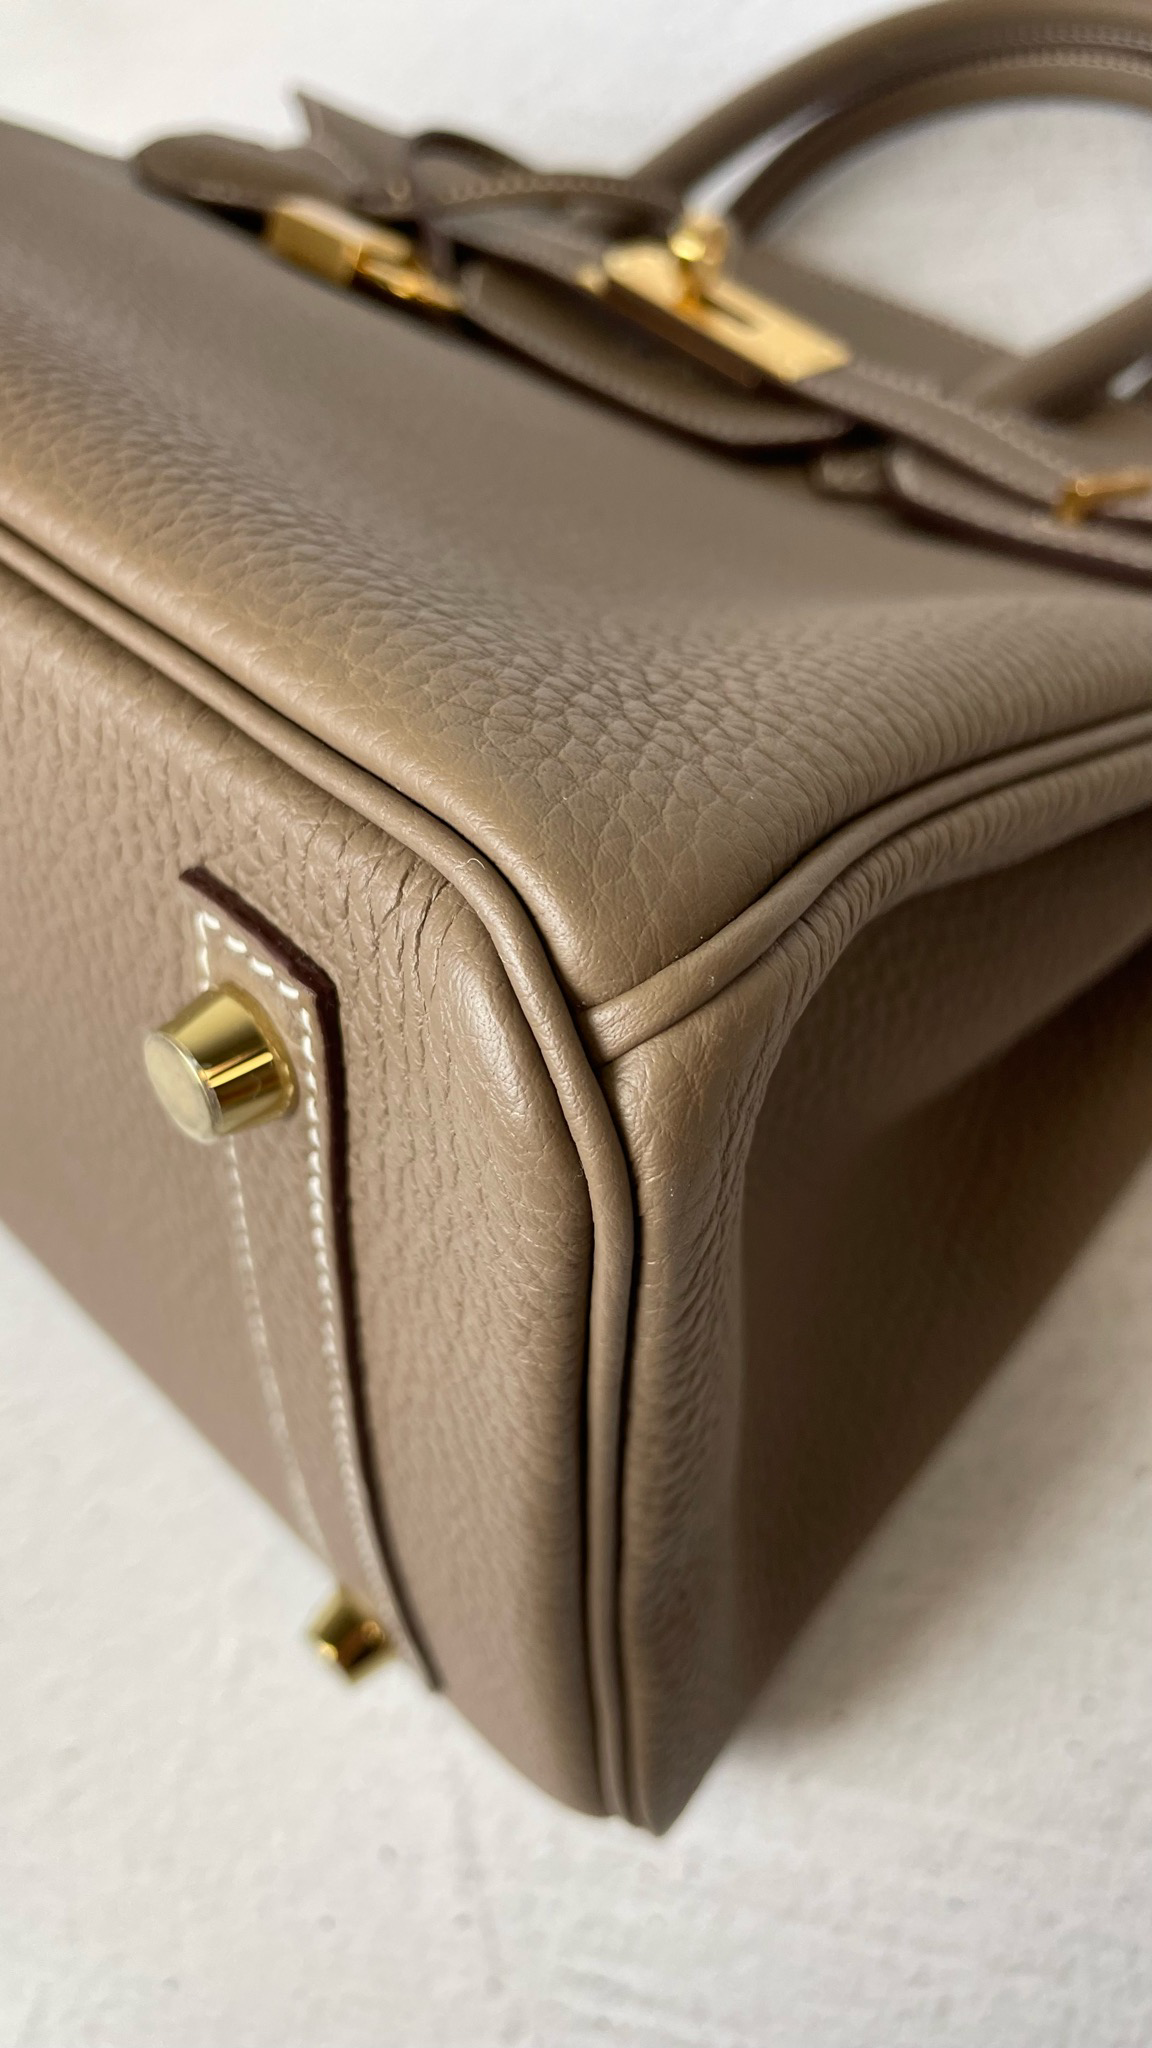 Hermes Birkin 30 Etoupe Togo Gold Hardware – Madison Avenue Couture